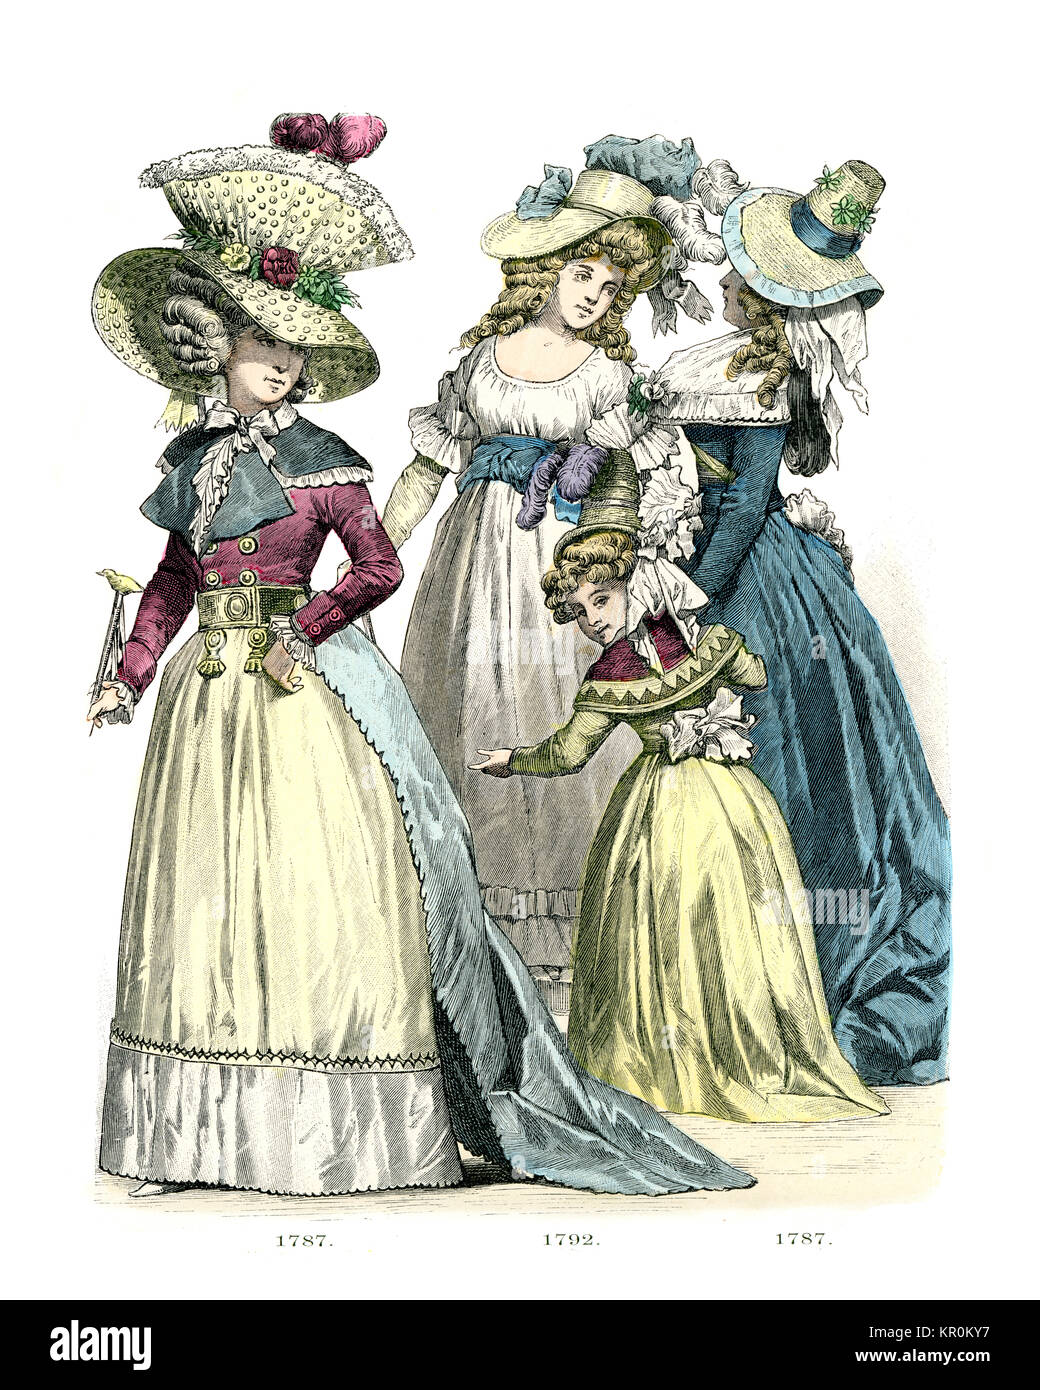 Histoire de la mode, des costumes de femmes françaises de la fin du xviiie siècle Banque D'Images